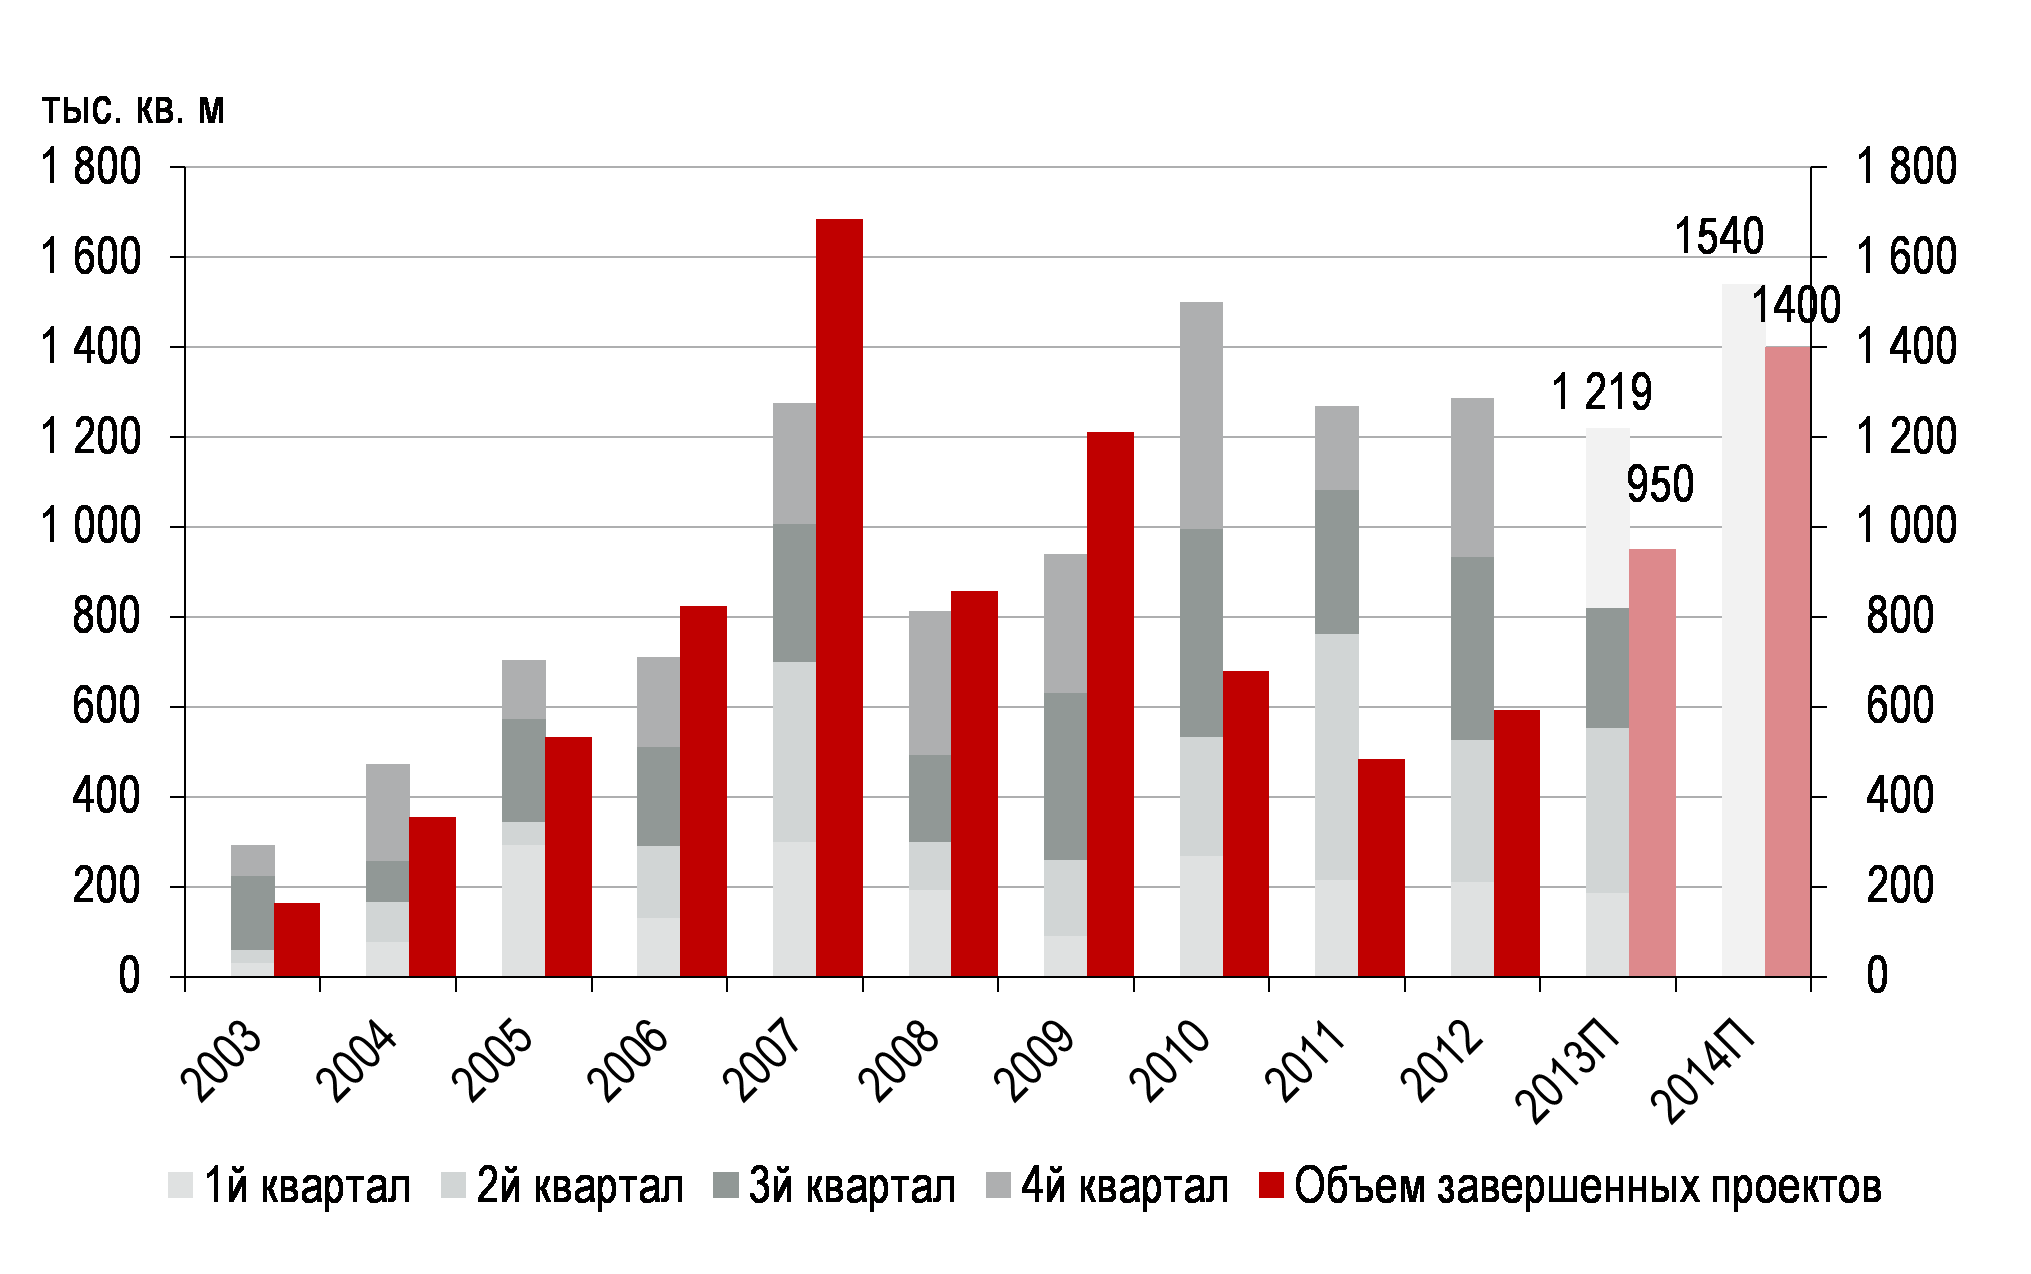 Соотношение спроса и предложения на рынке складов Московского региона